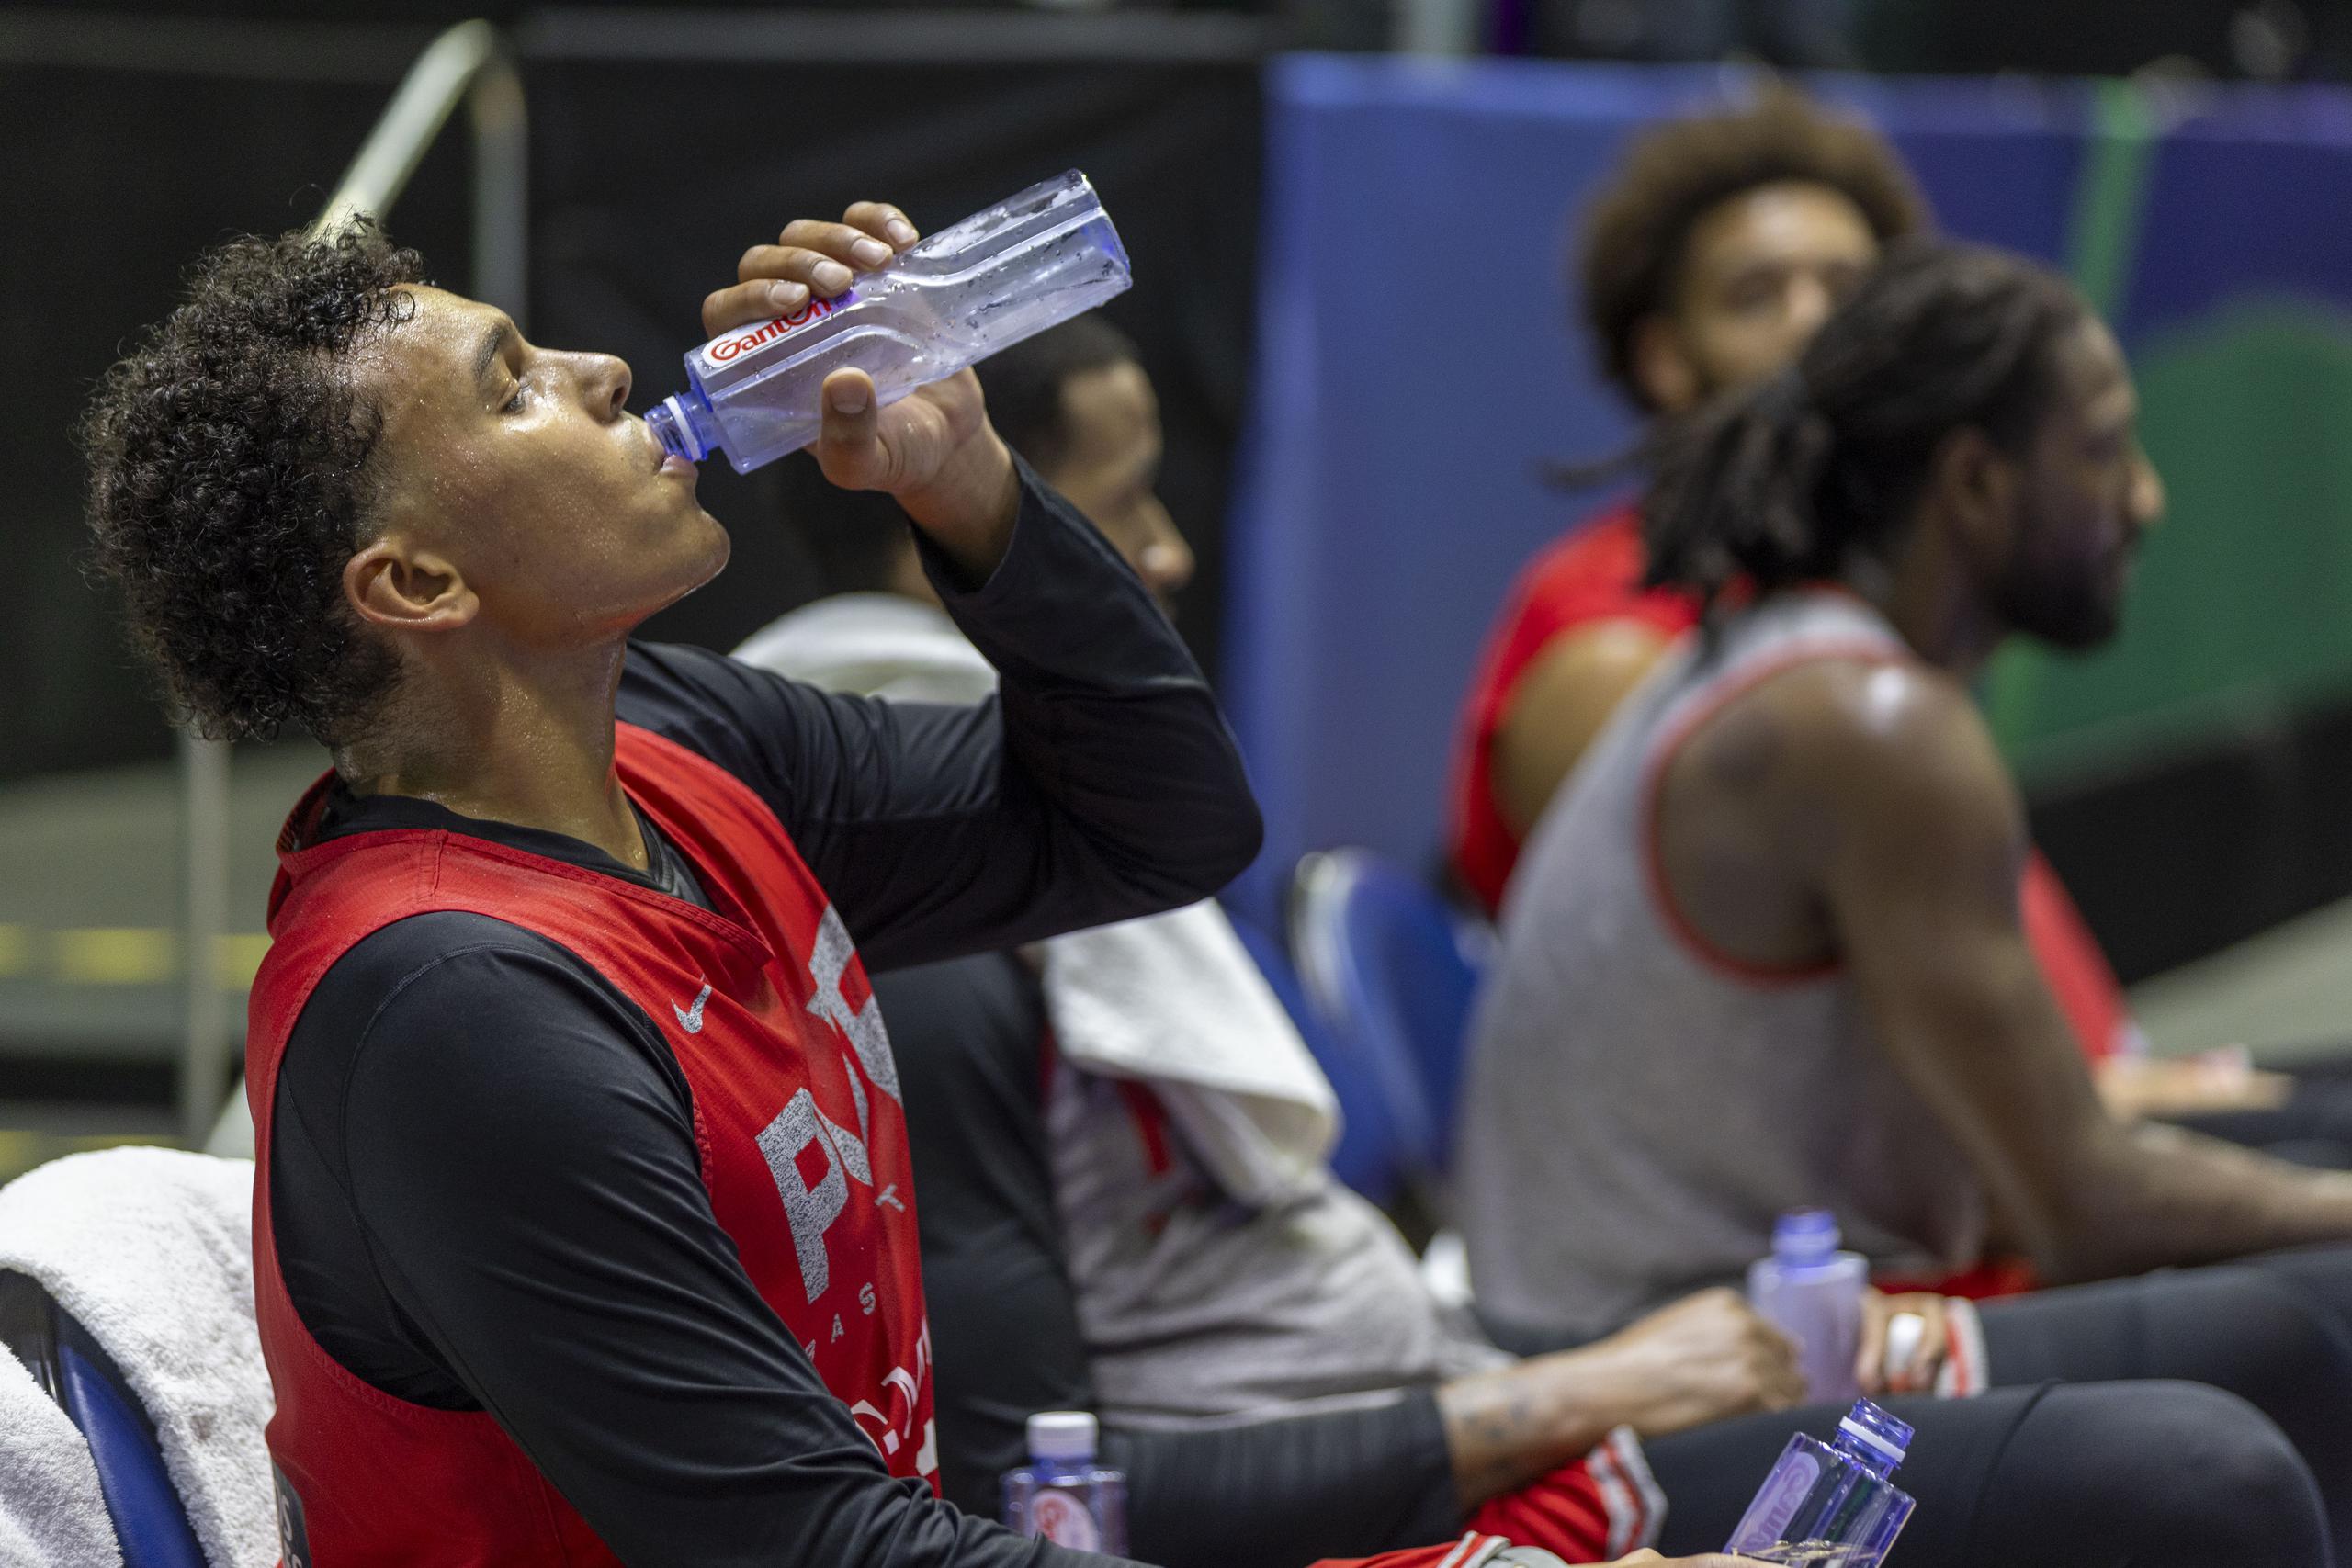 Justin Reyes aparece aquí tomando una botella de agua para hidratarse luego de esforzarse en el entrenamiento.